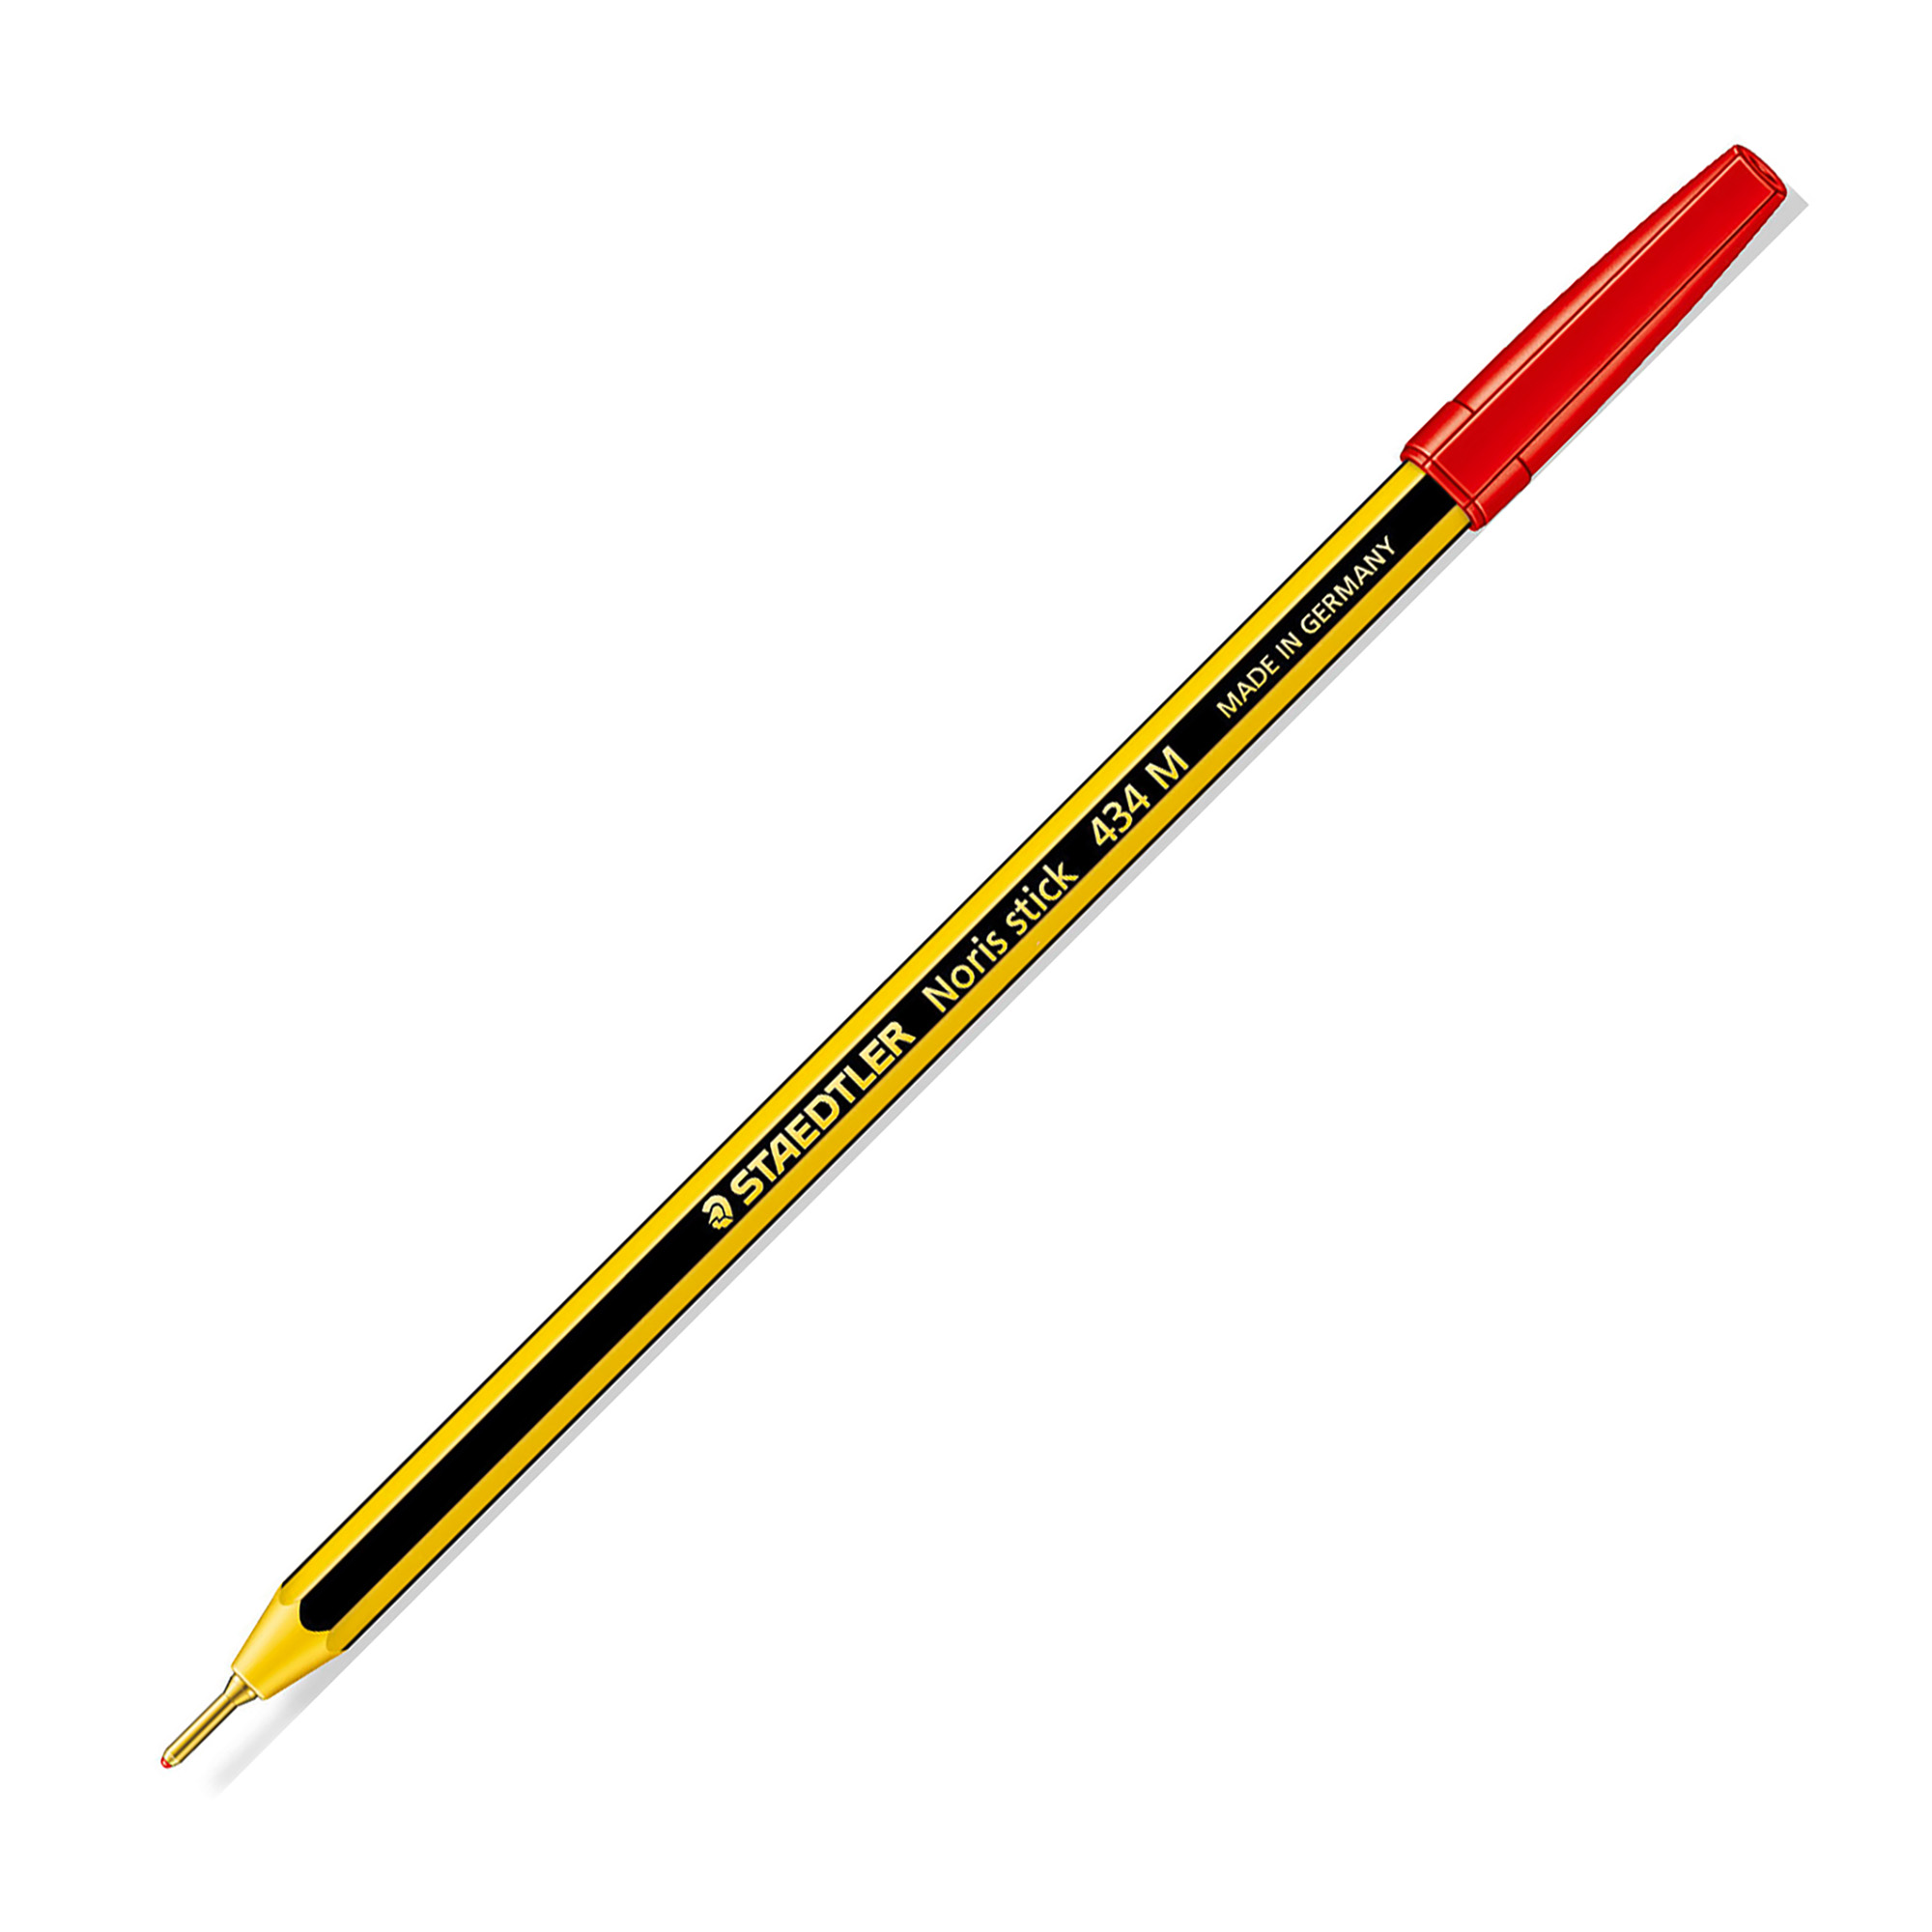 Staedtler-Noris-Stick-Blu-Penna-a-Sfera-1-mm-Confezione-da-20-penne